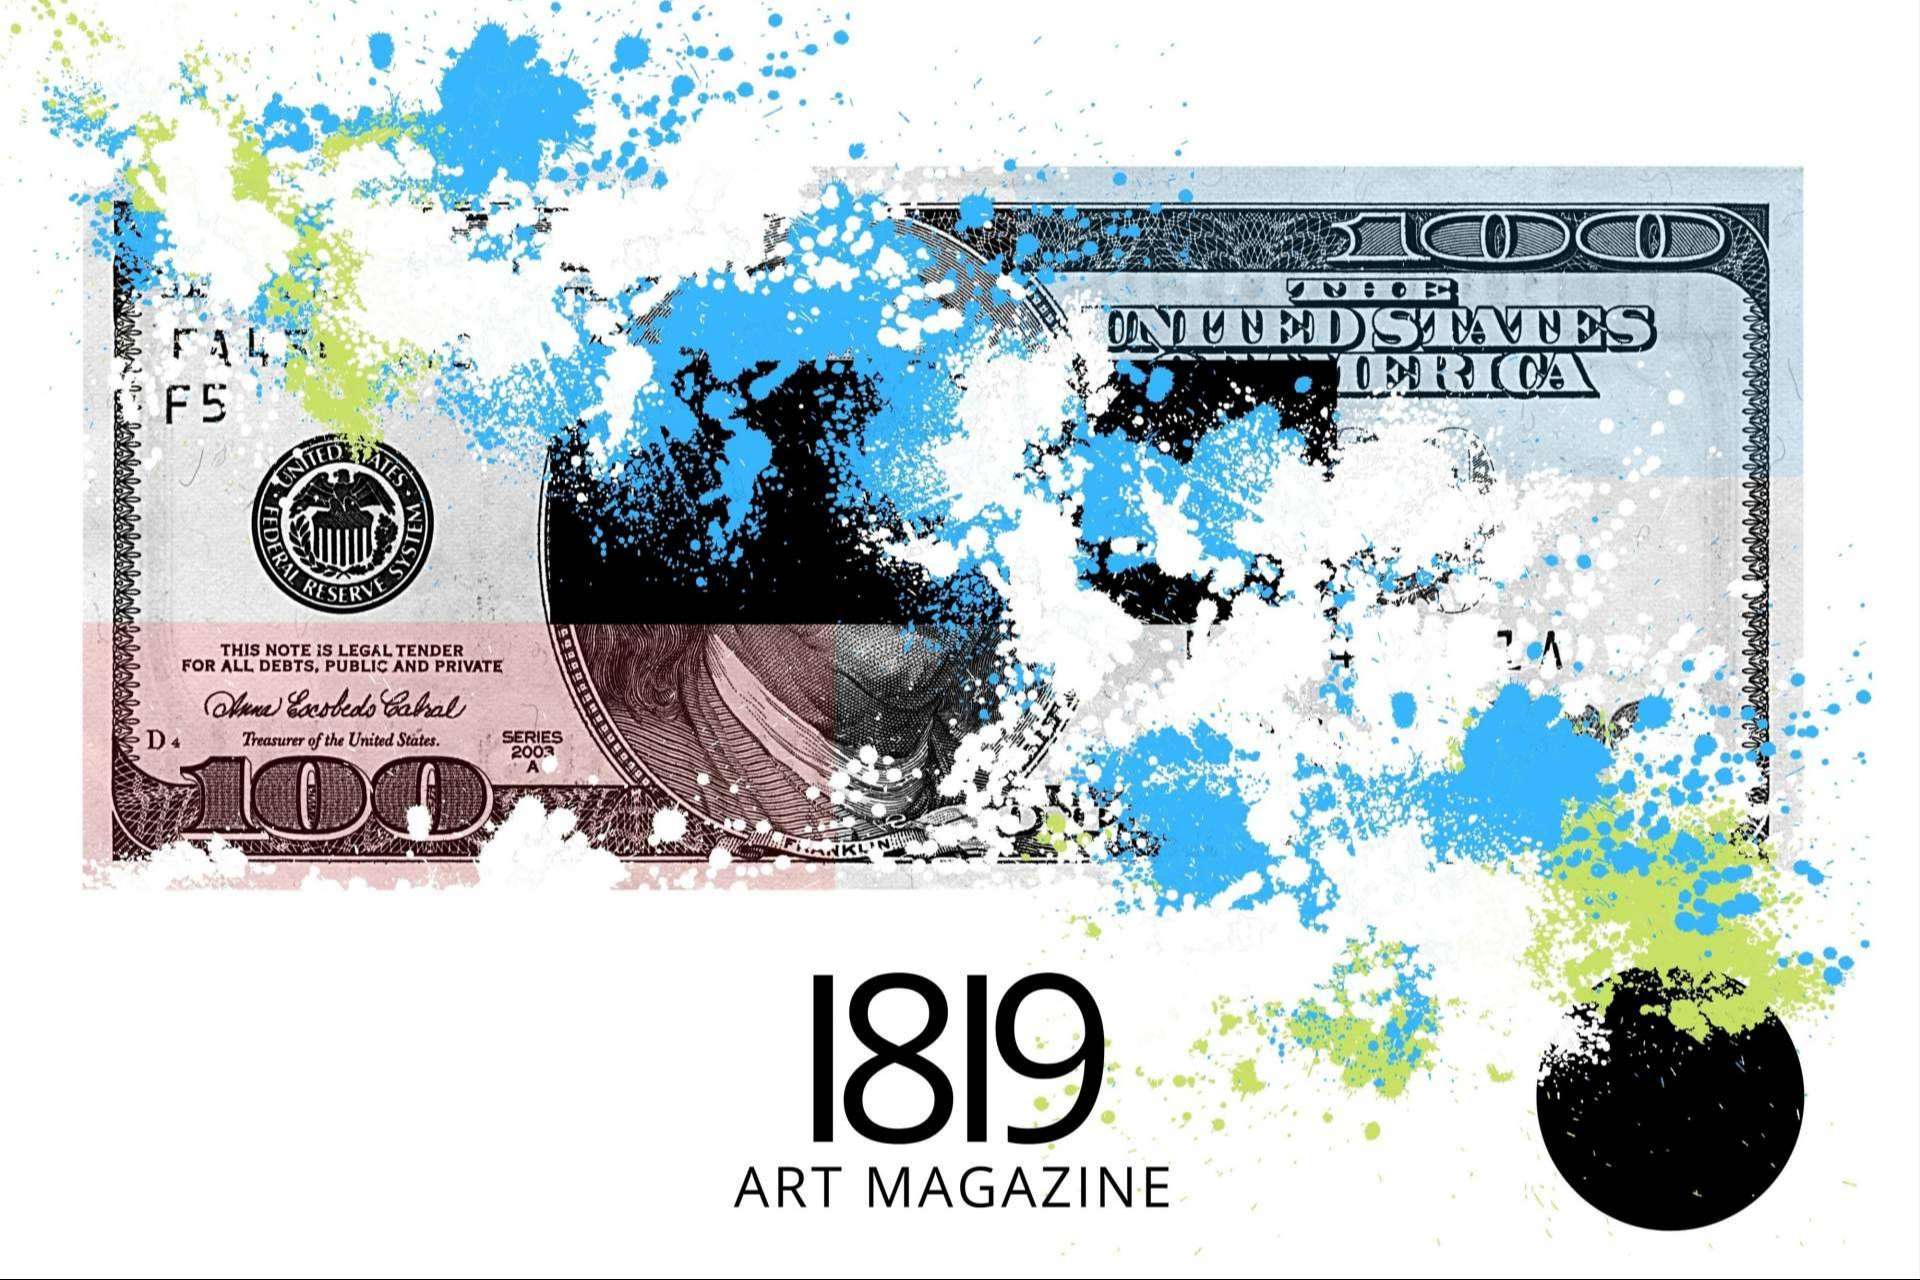 La revista creada por 1819 Art Gallery, 1819 Art Magazine